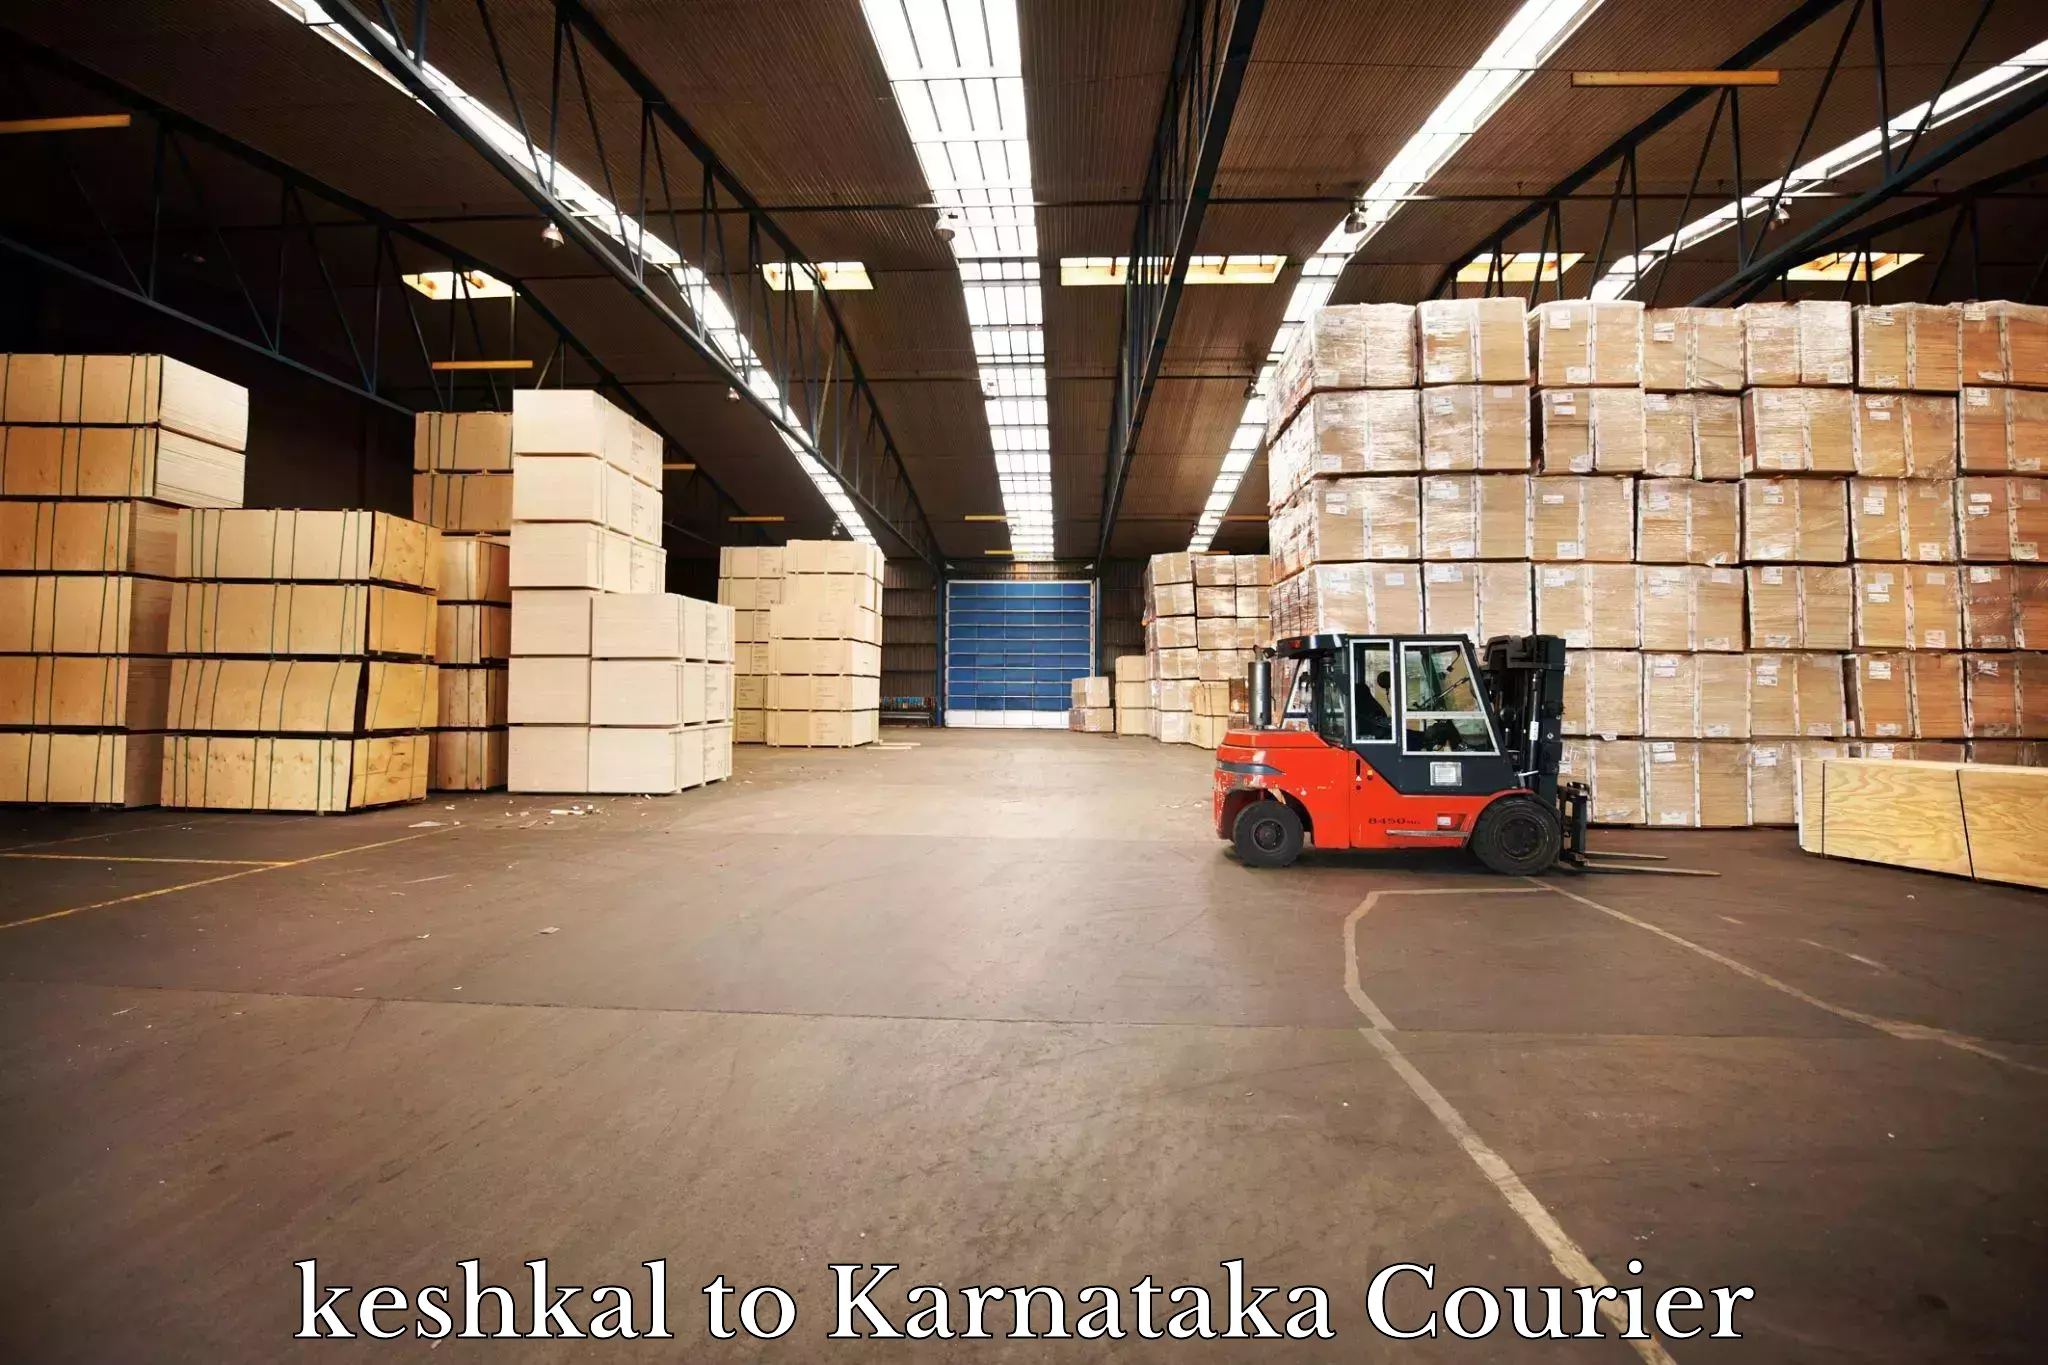 High value parcel delivery keshkal to Karnataka